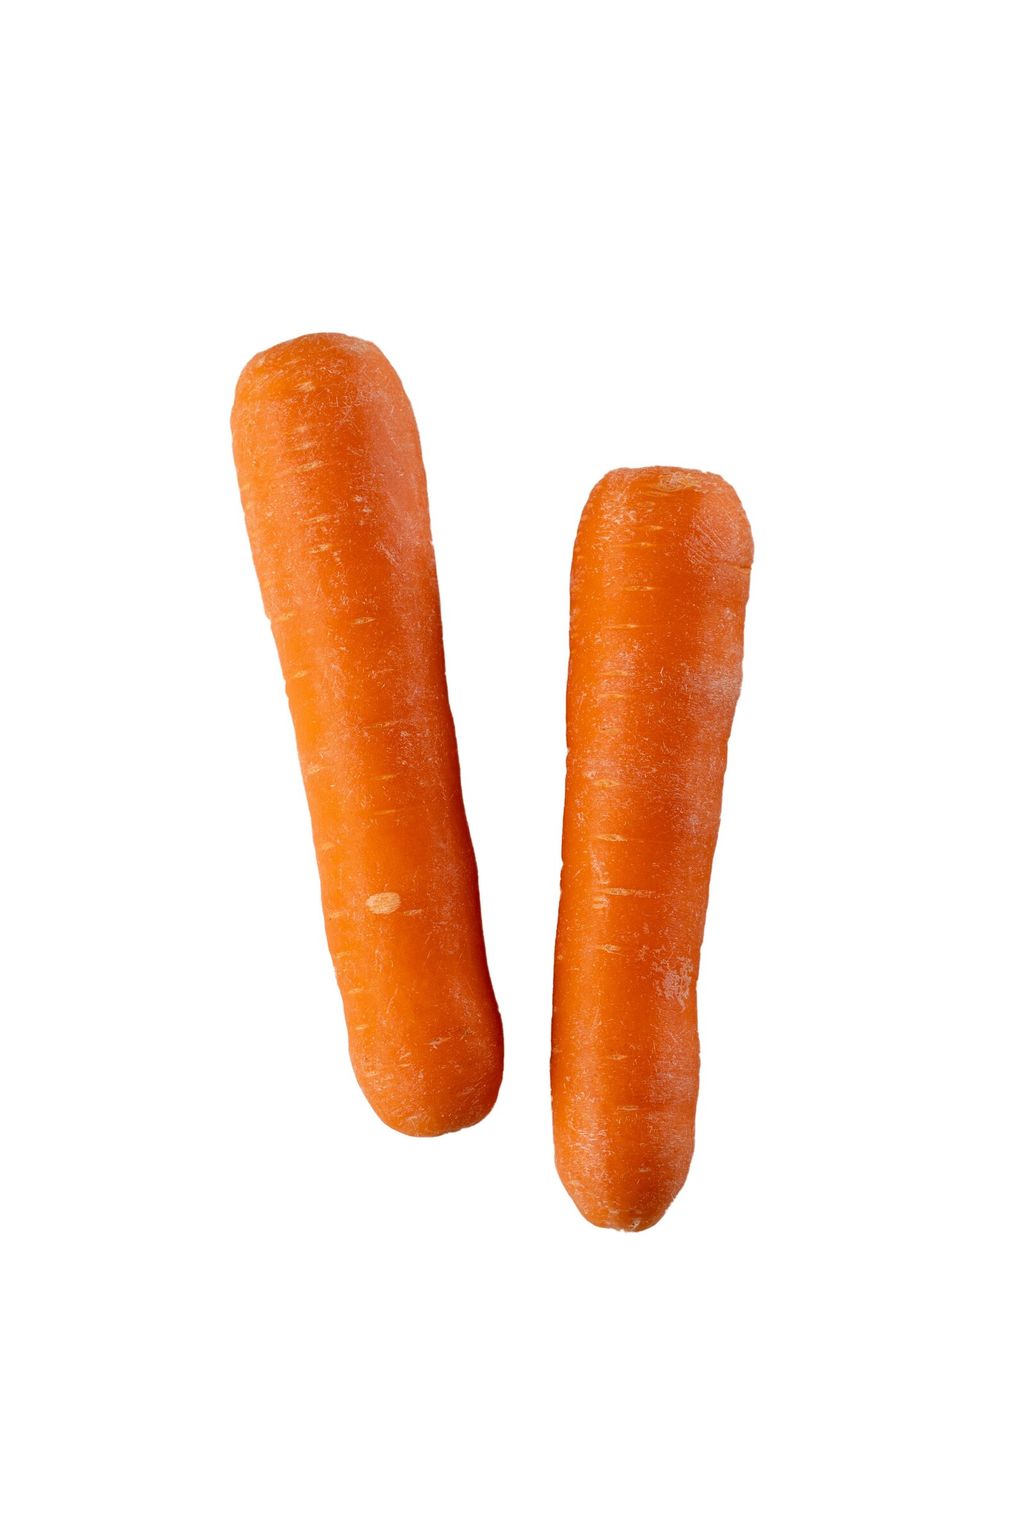 Carrot 3 (White).jpg